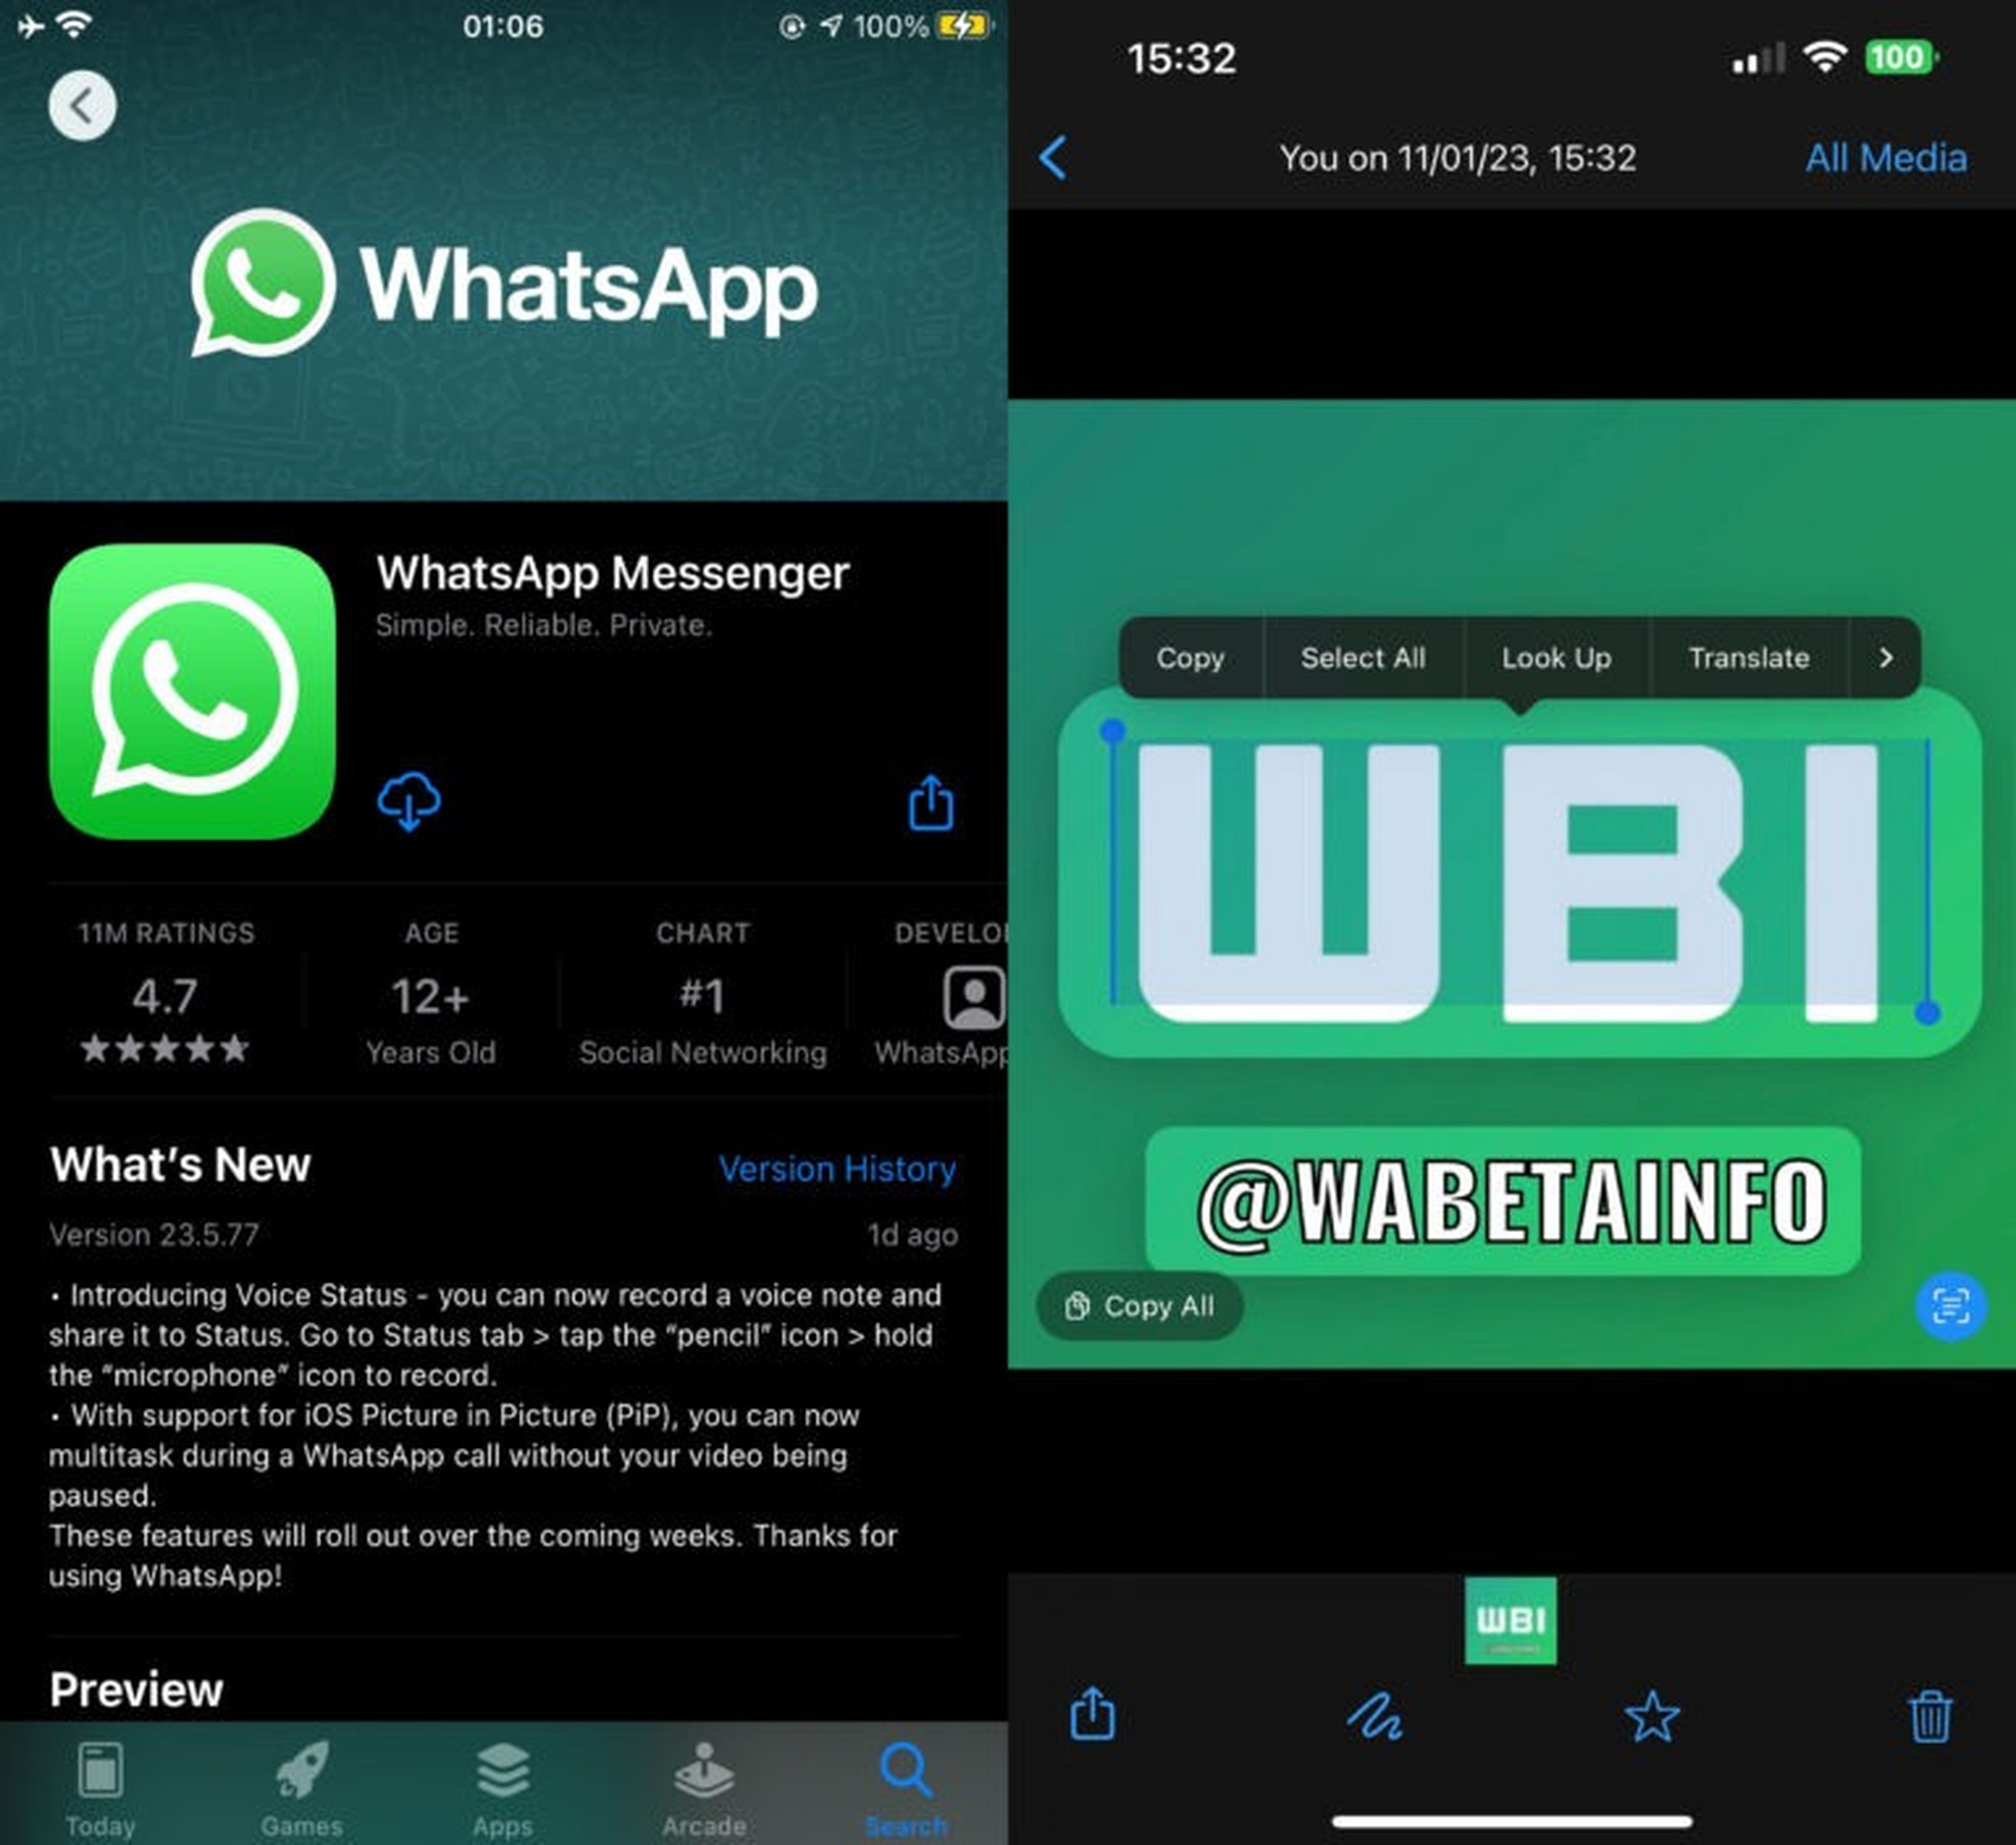 WhatsApp apuesta por la inteligencia: pronto podrás copiar texto desde fotos